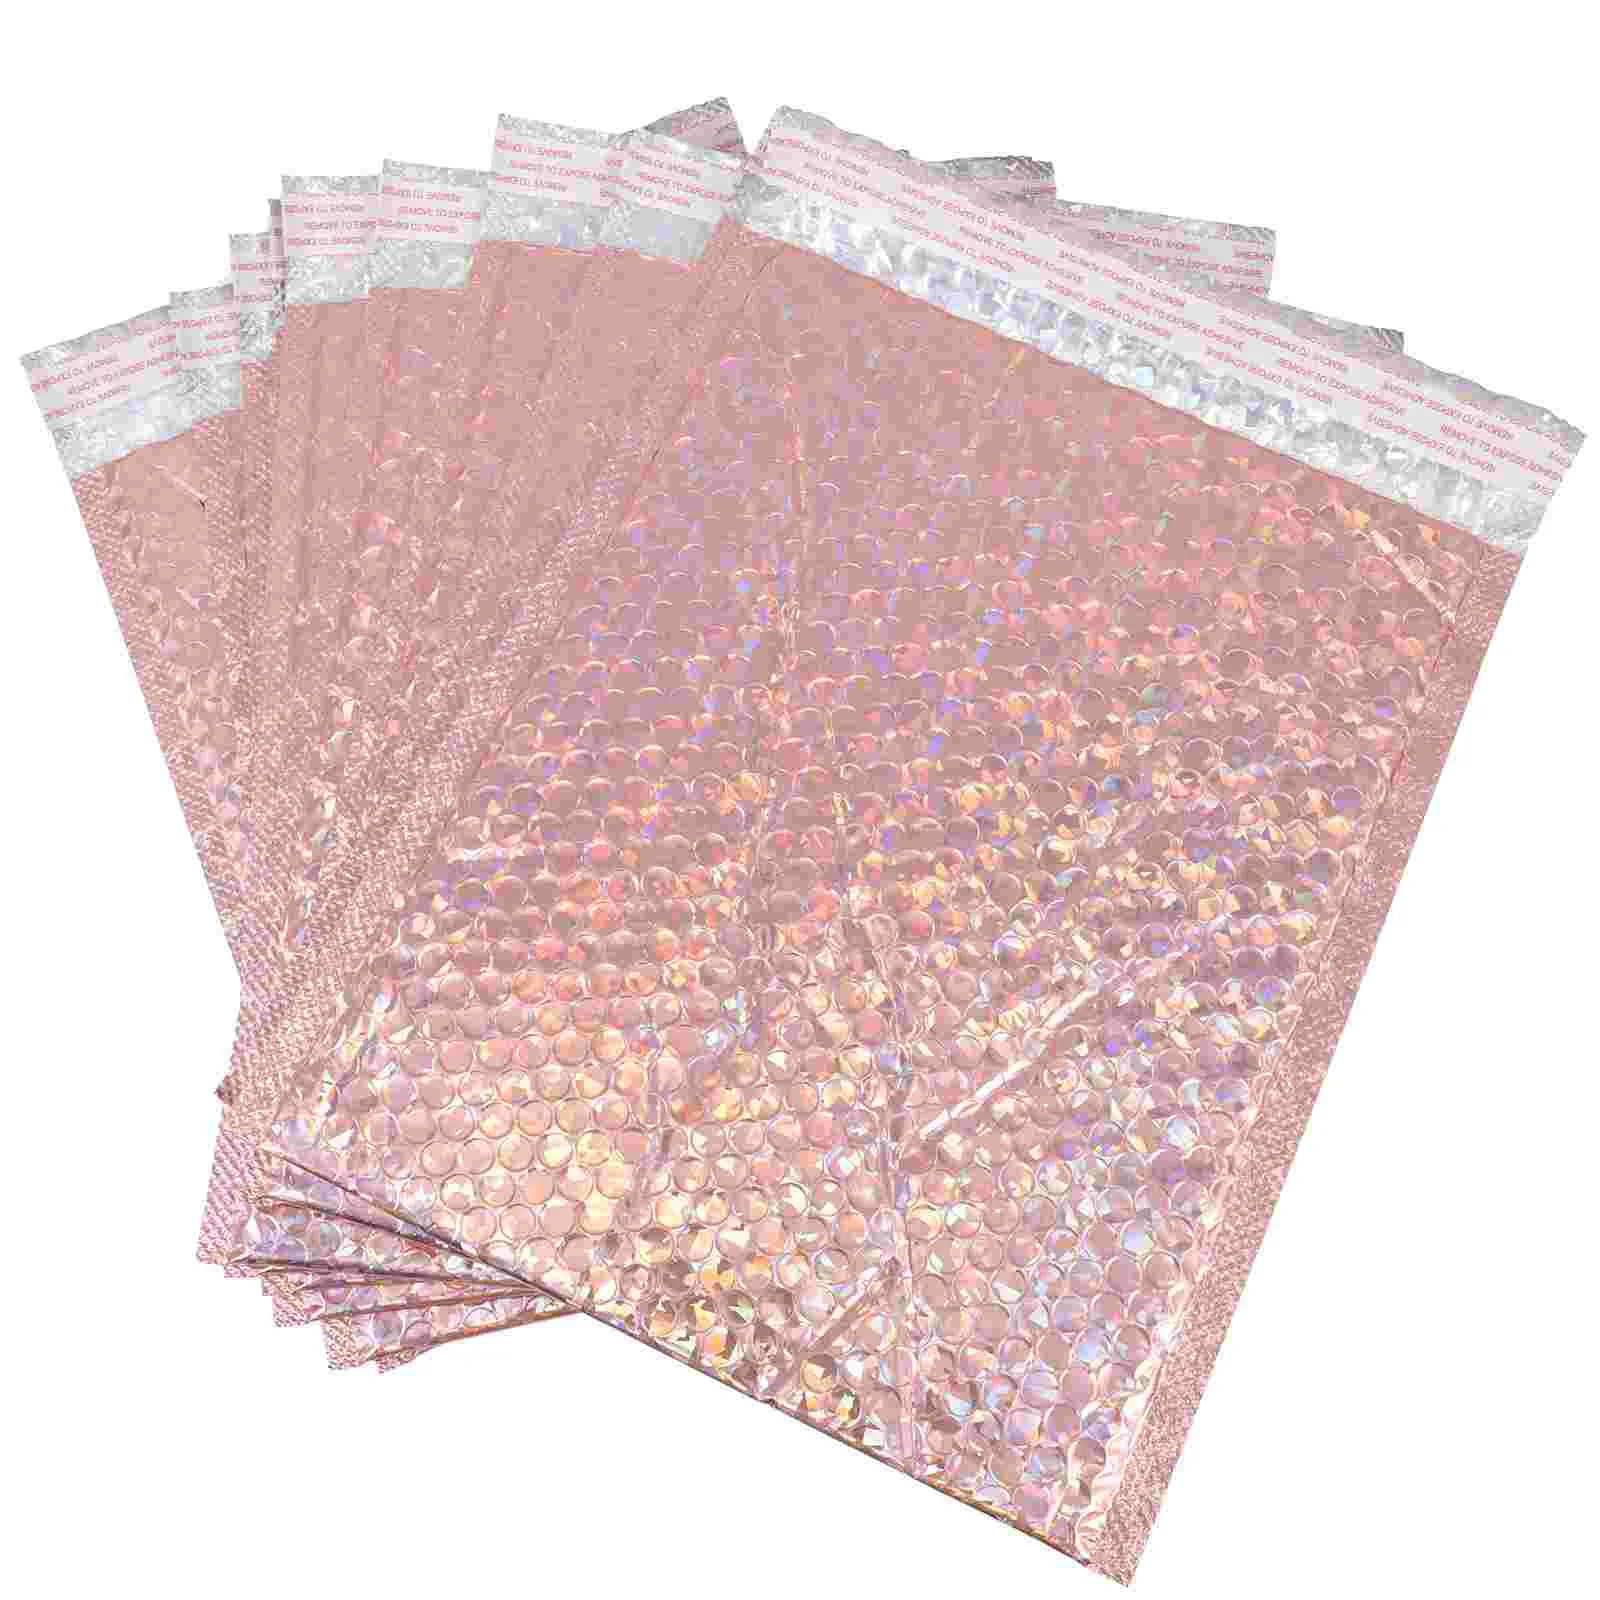 

10 шт. мягкие пузырчатые конверты, мягкие пузырчатые Упаковочные пакеты для доставки (розовое золото)